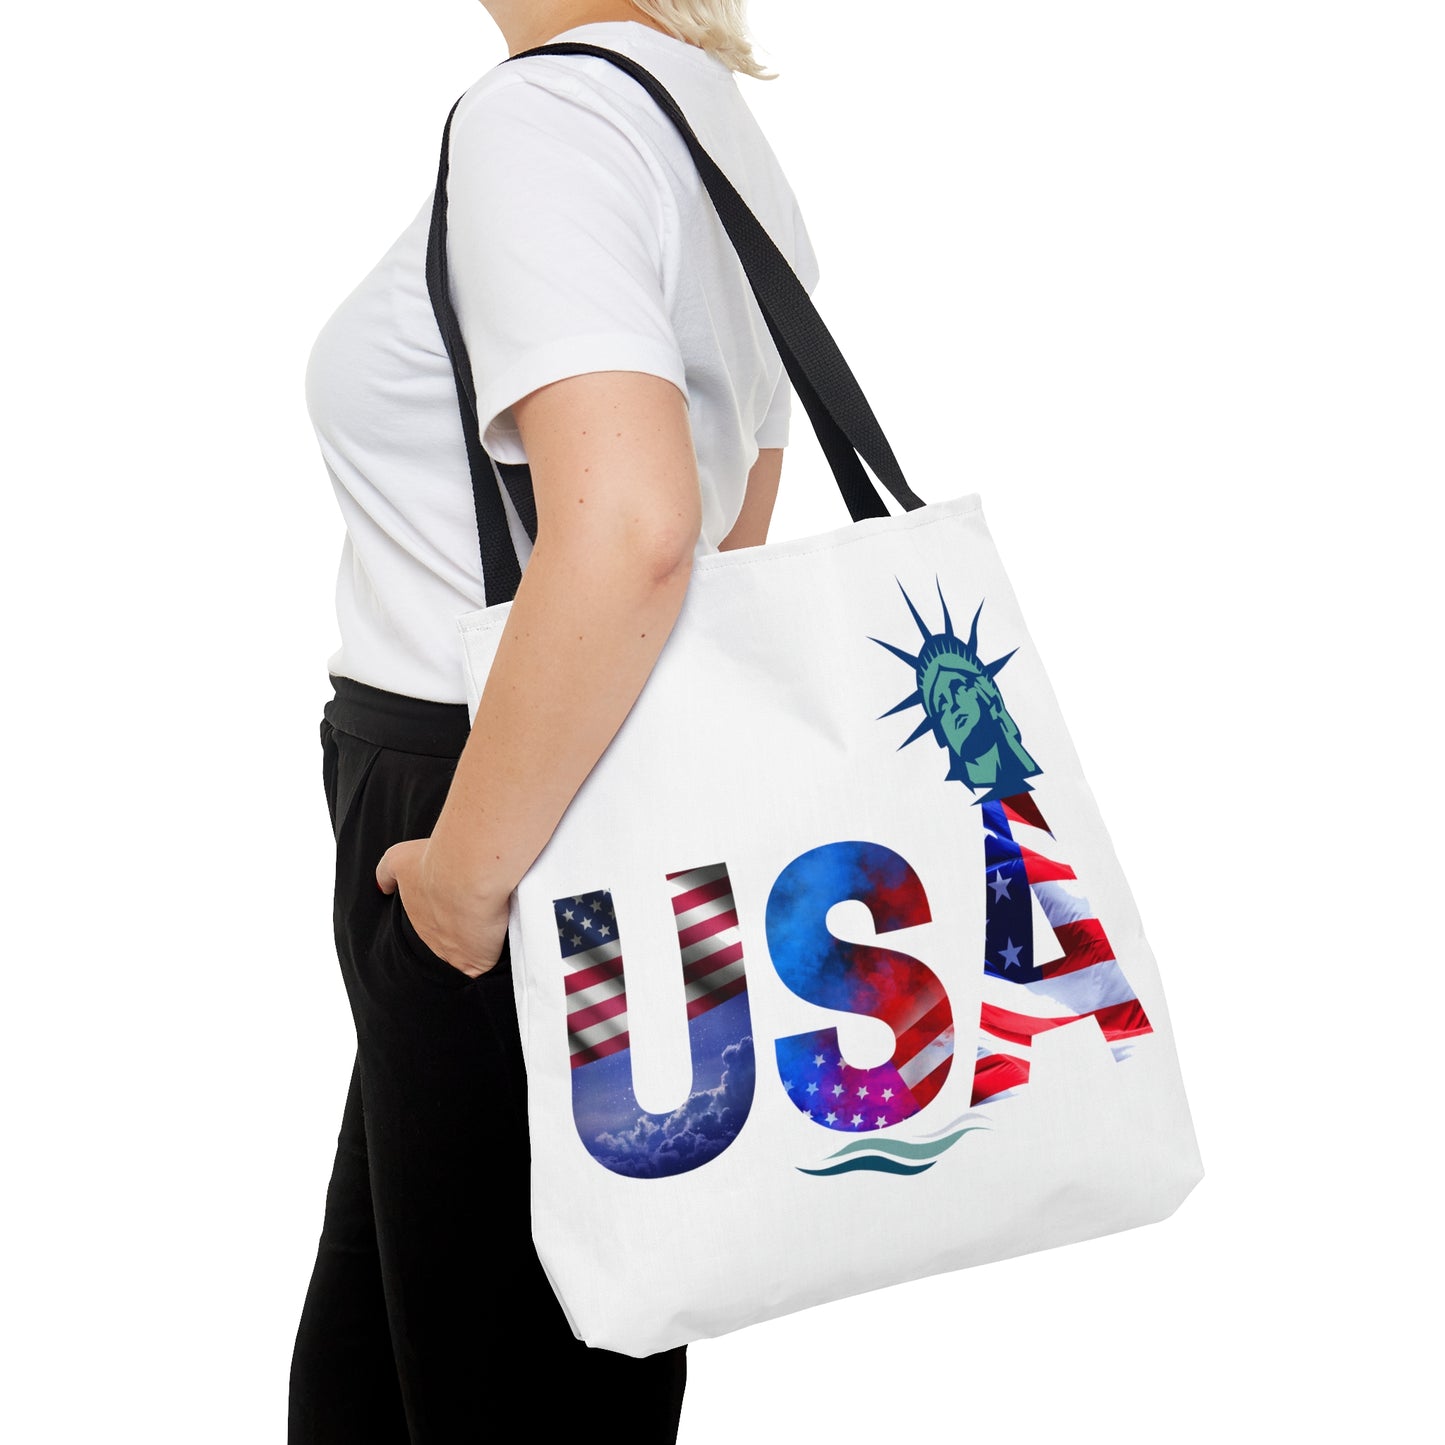 USA Tote Bag